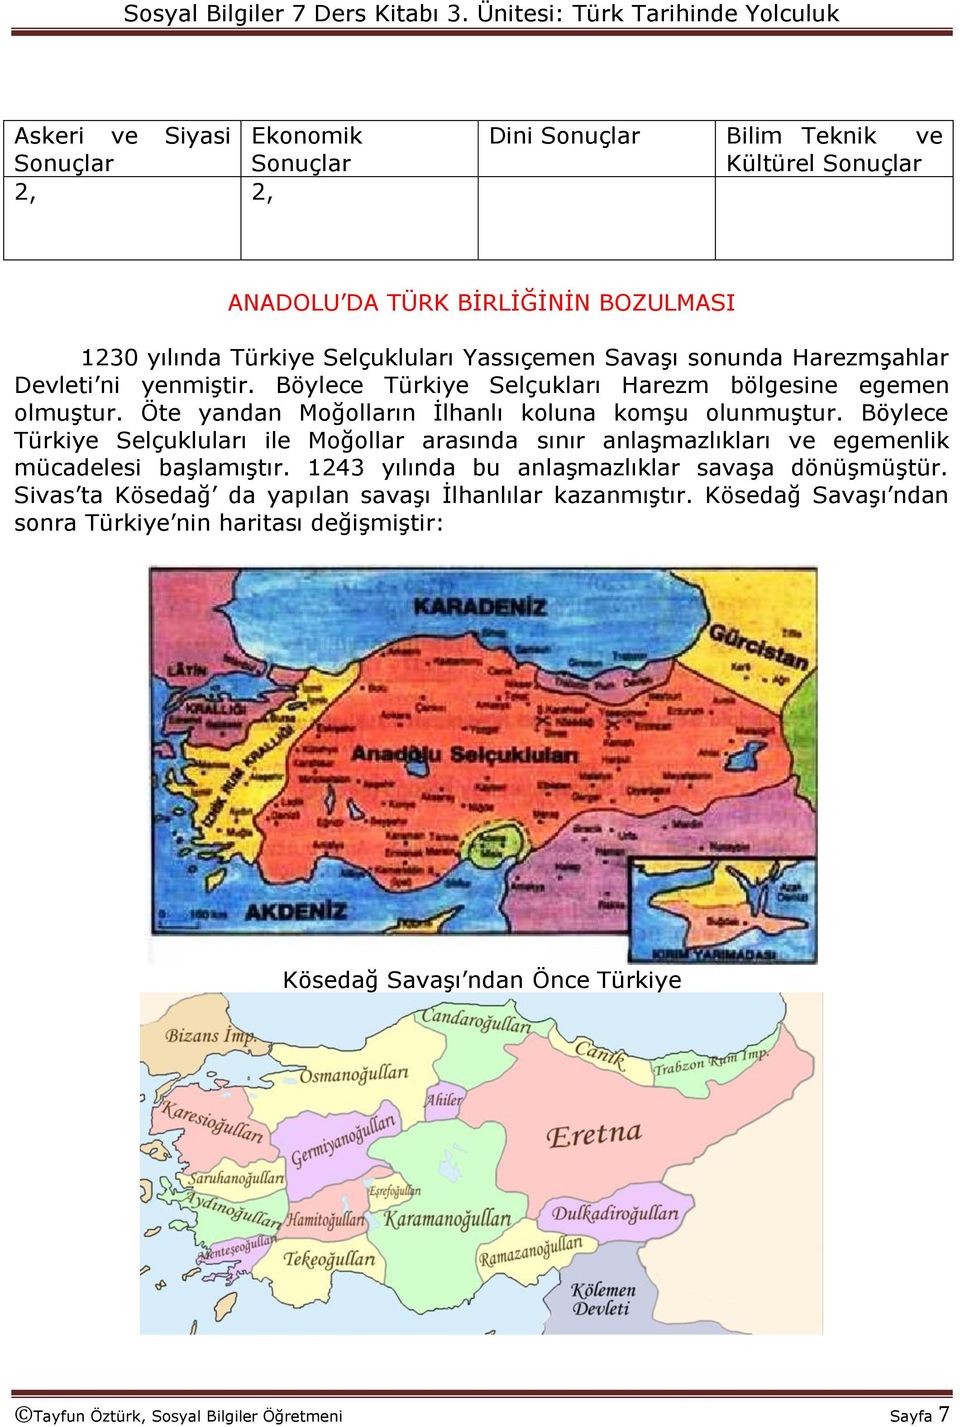 Böylece Türkiye Selçukluları ile Moğollar arasında sınır anlaģmazlıkları ve egemenlik mücadelesi baģlamıģtır. 1243 yılında bu anlaģmazlıklar savaģa dönüģmüģtür.